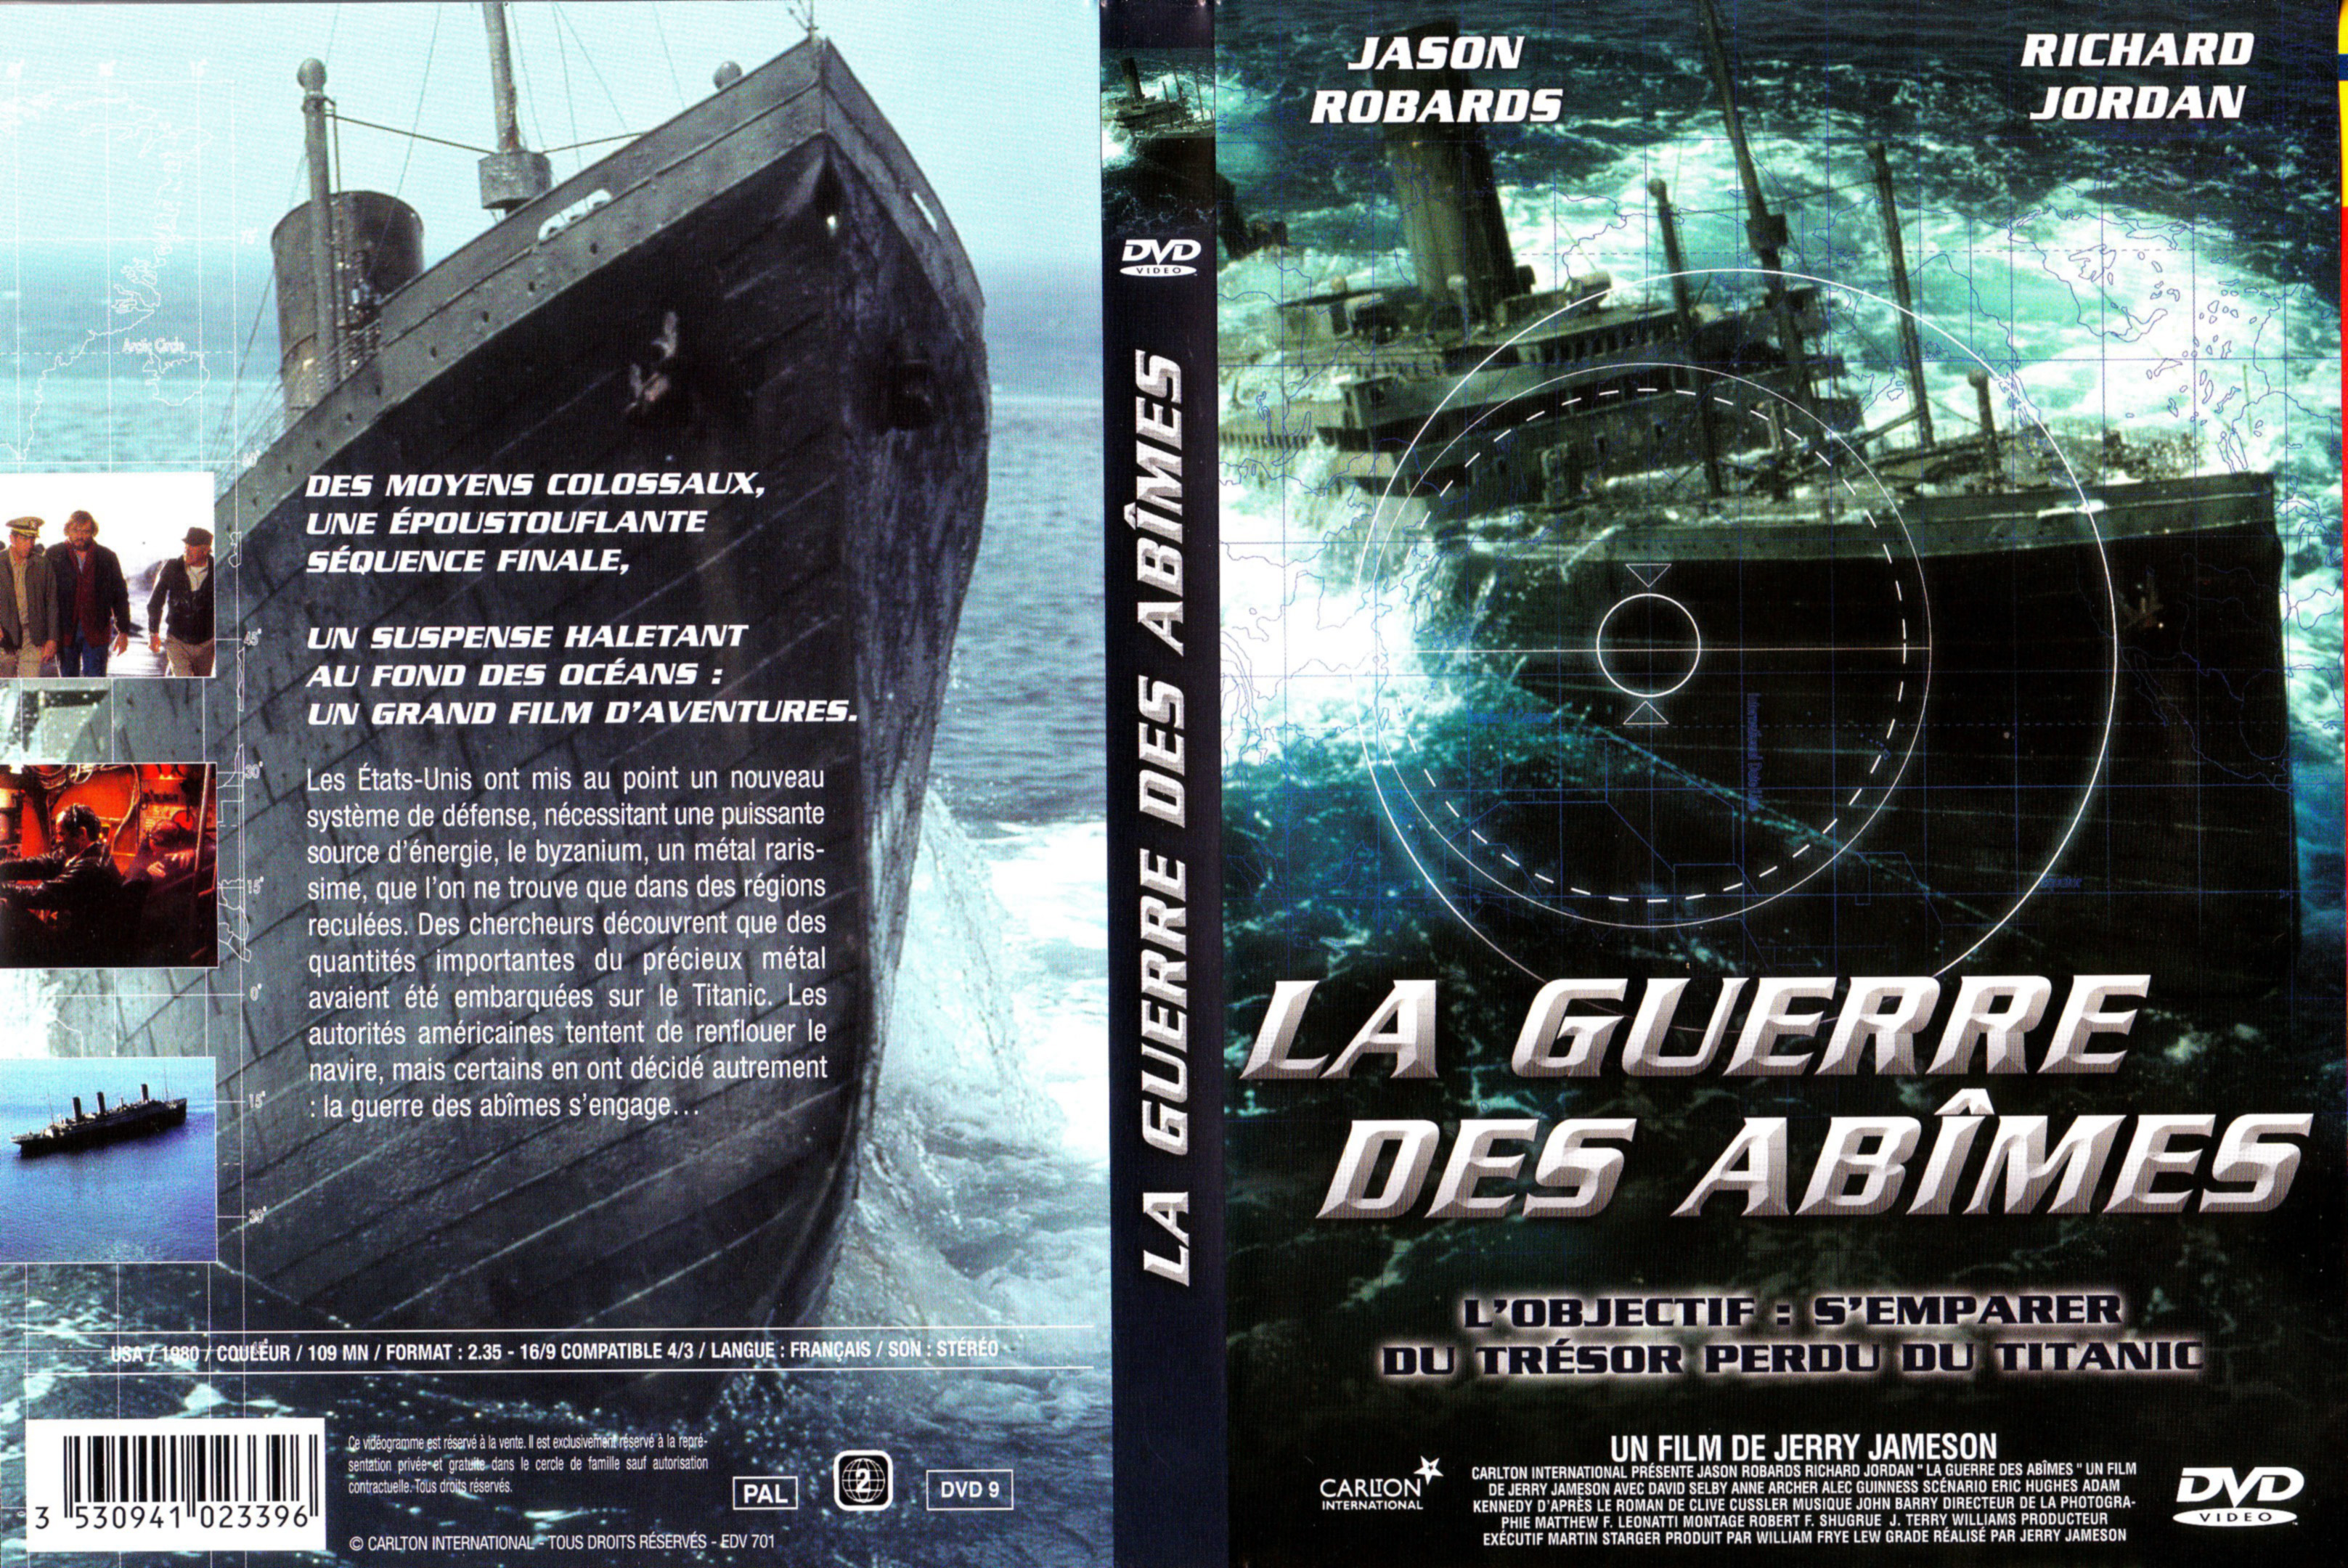 Jaquette DVD La guerre des abimes v2